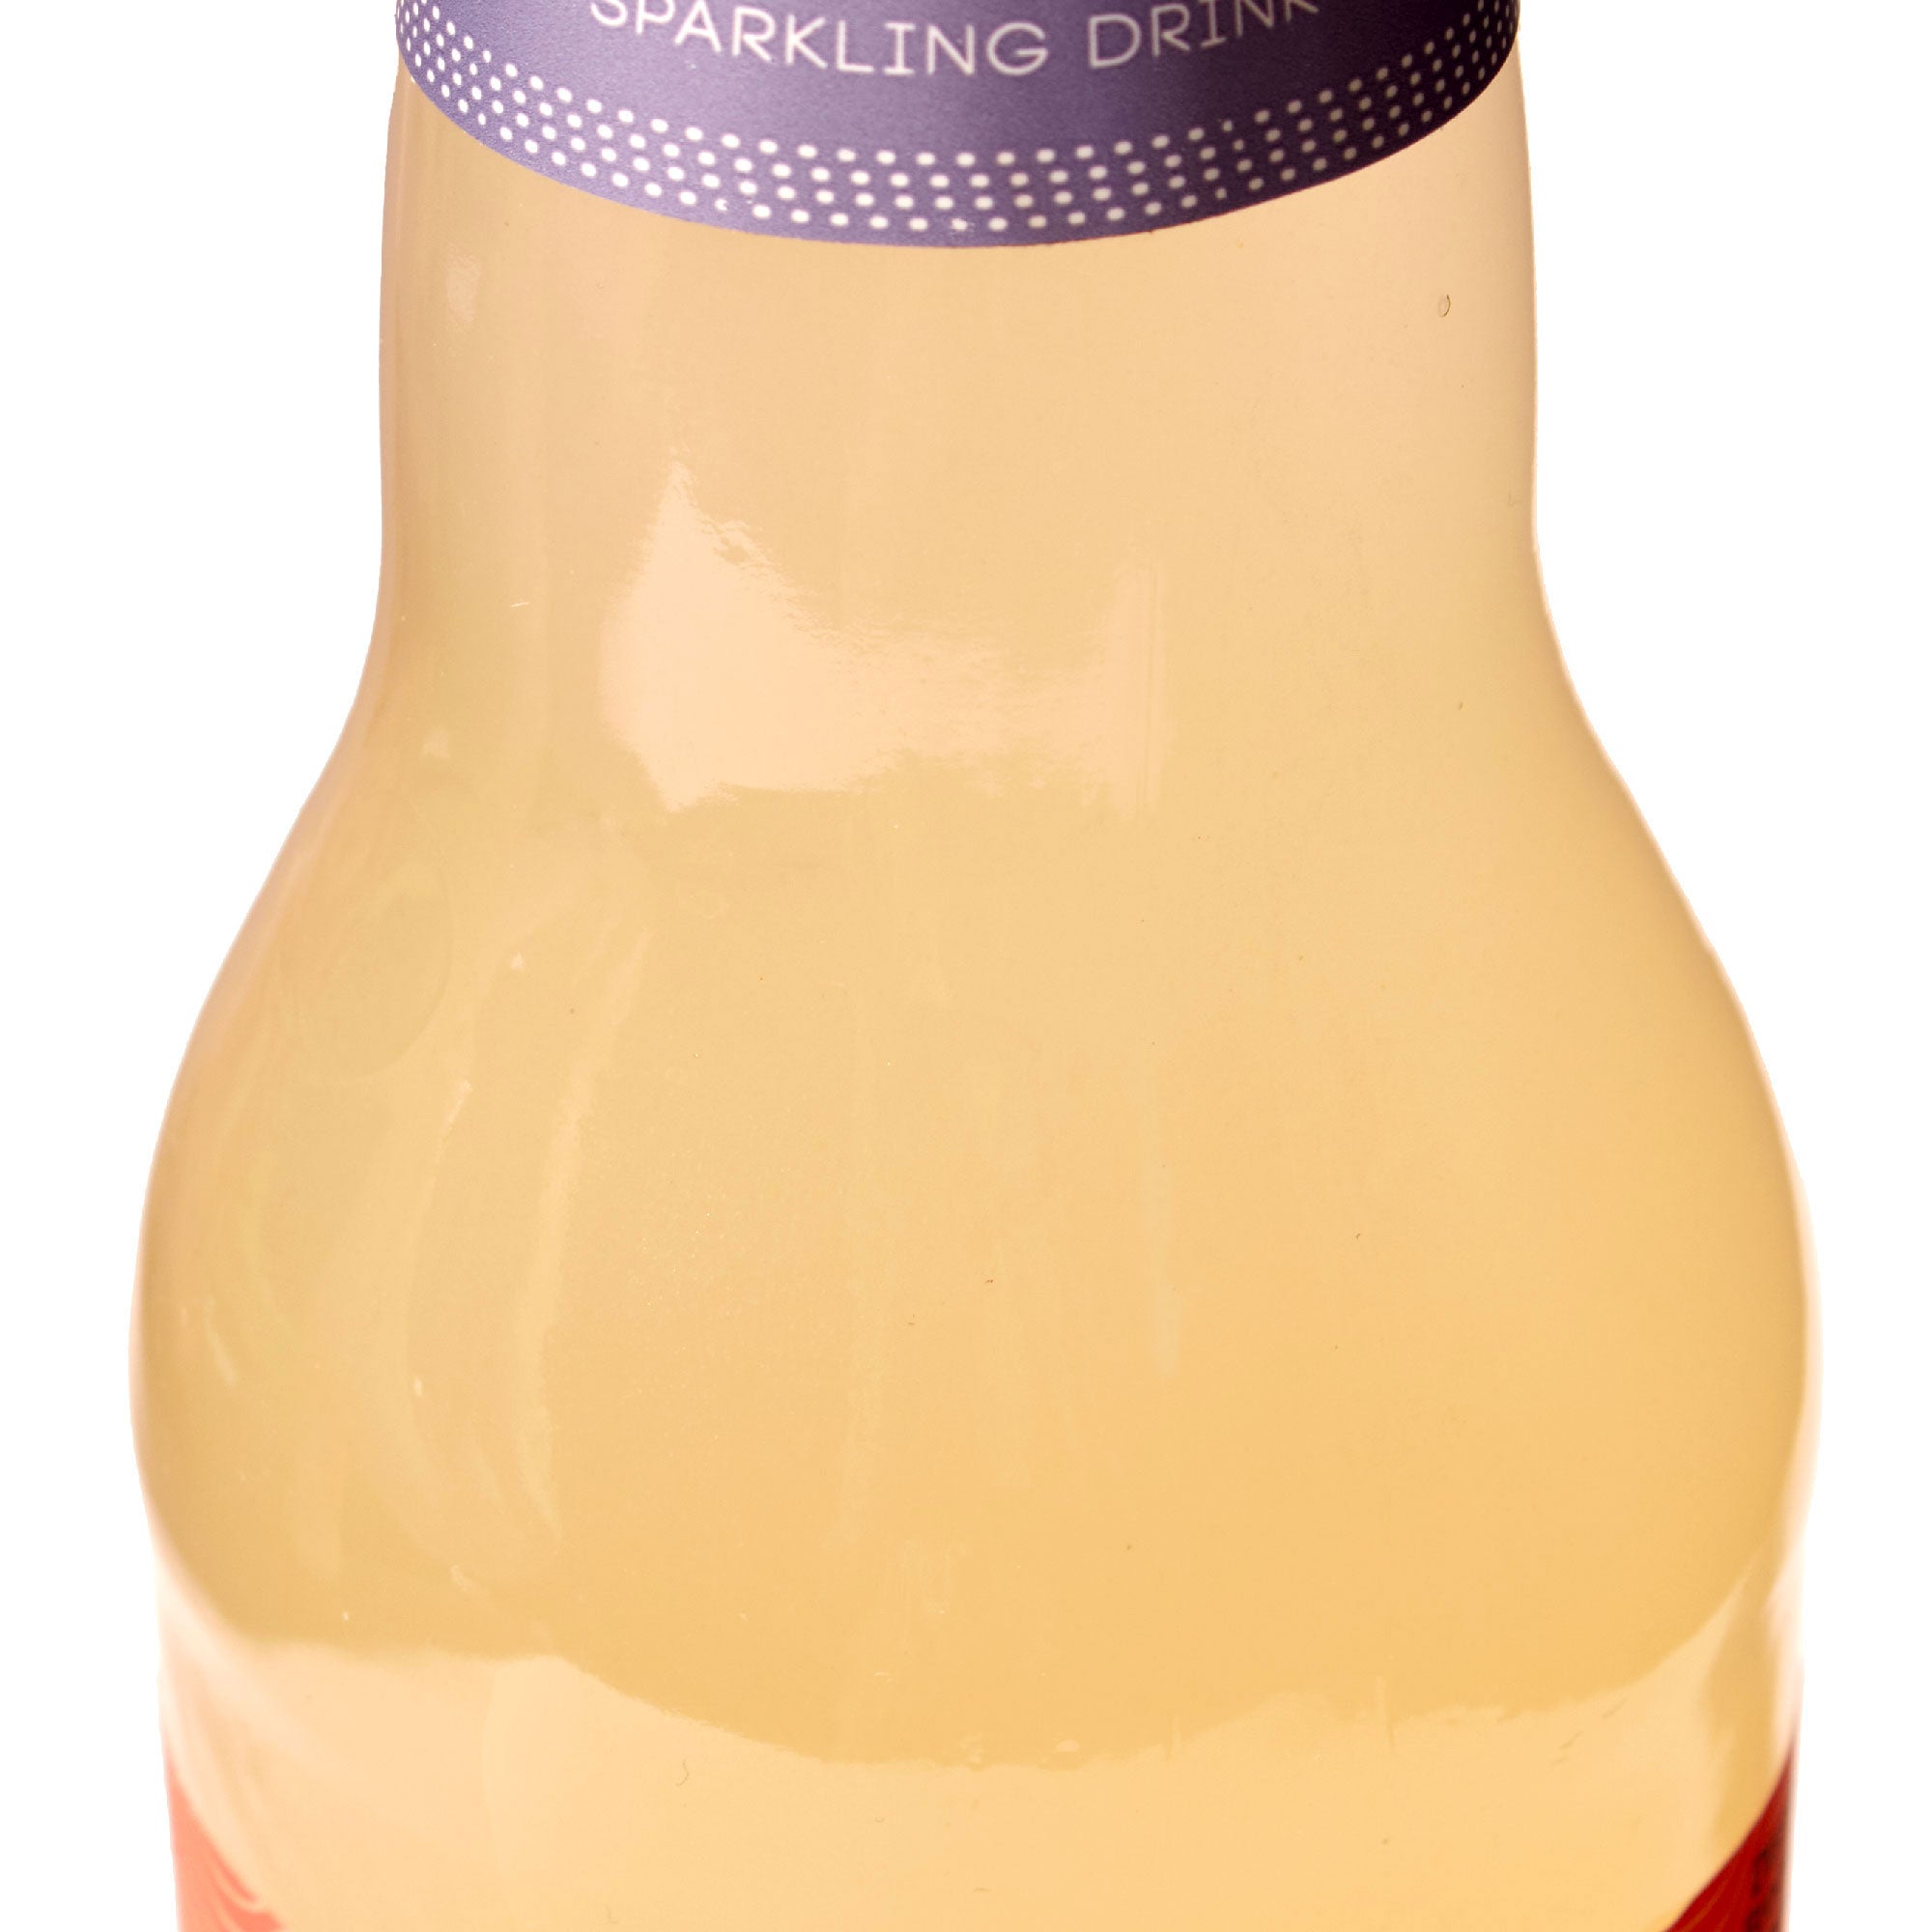 Moshi Sparkling Juice Drink: Yuzu & White Peach